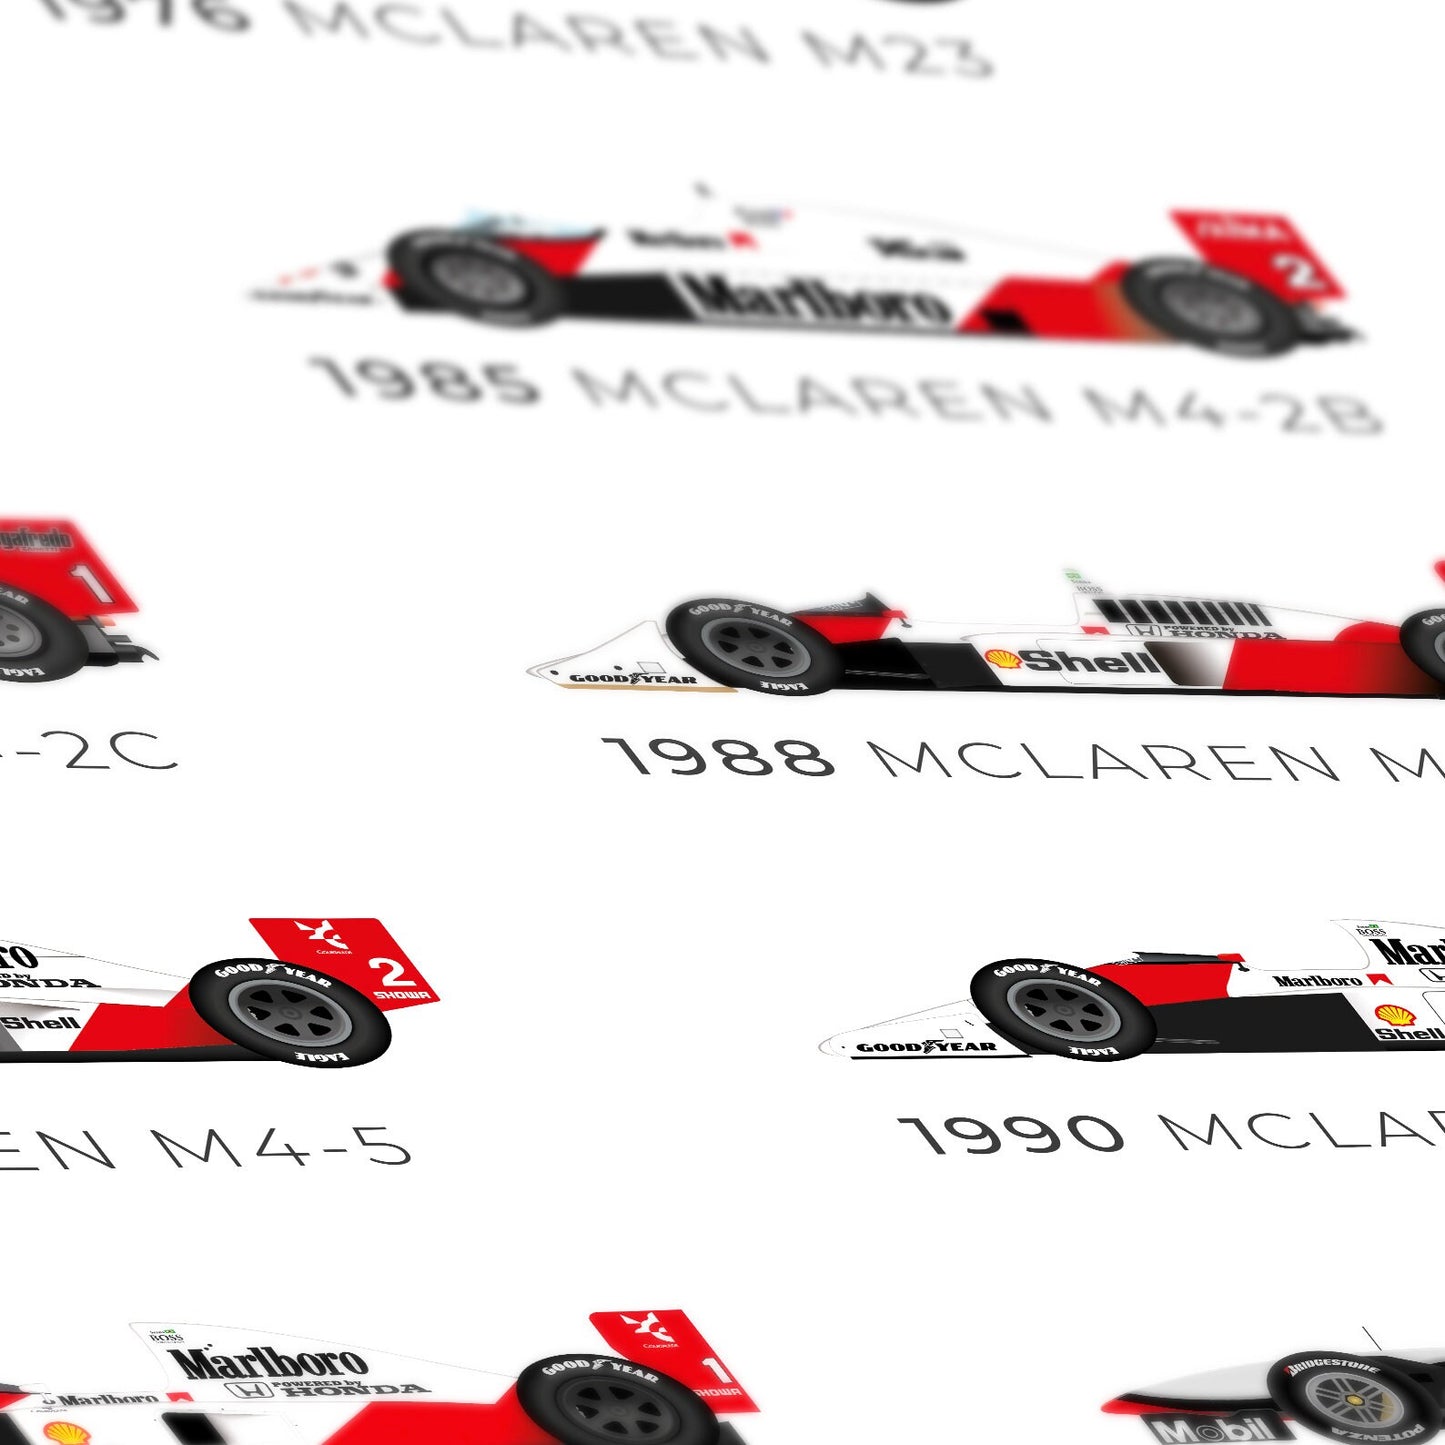 McLaren 12x World Champion